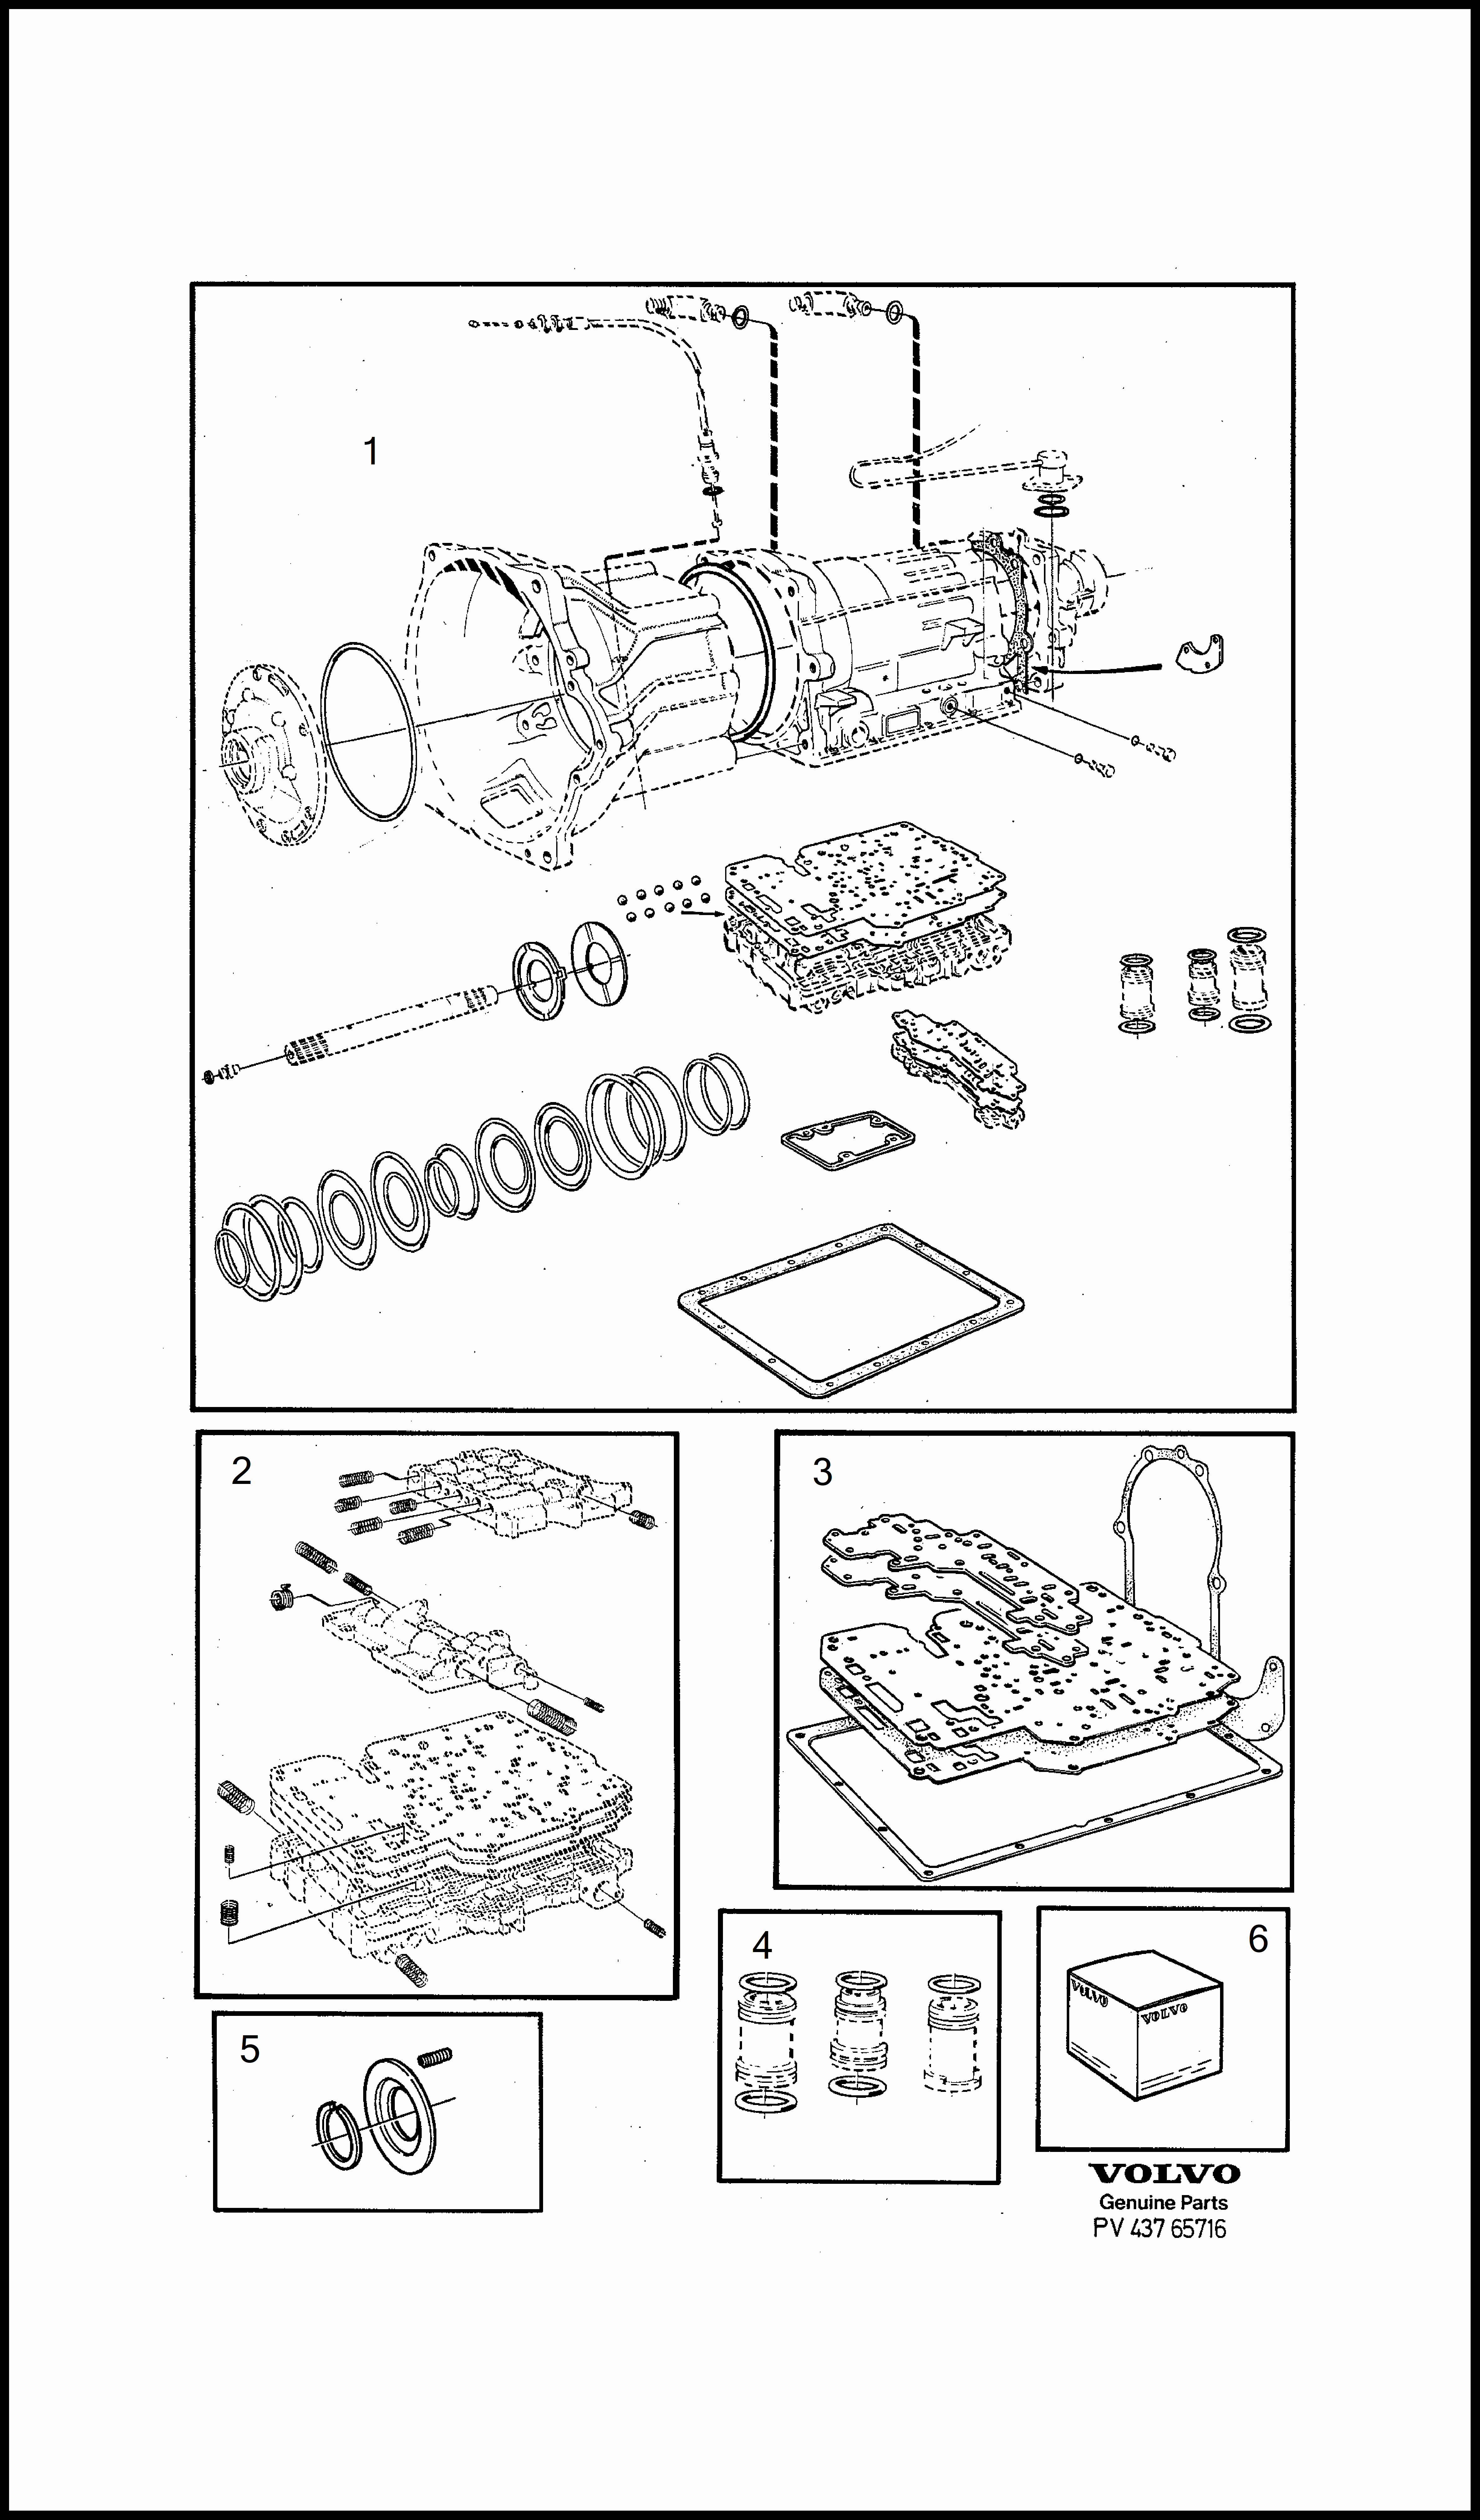 repair kits для Volvo 240 240